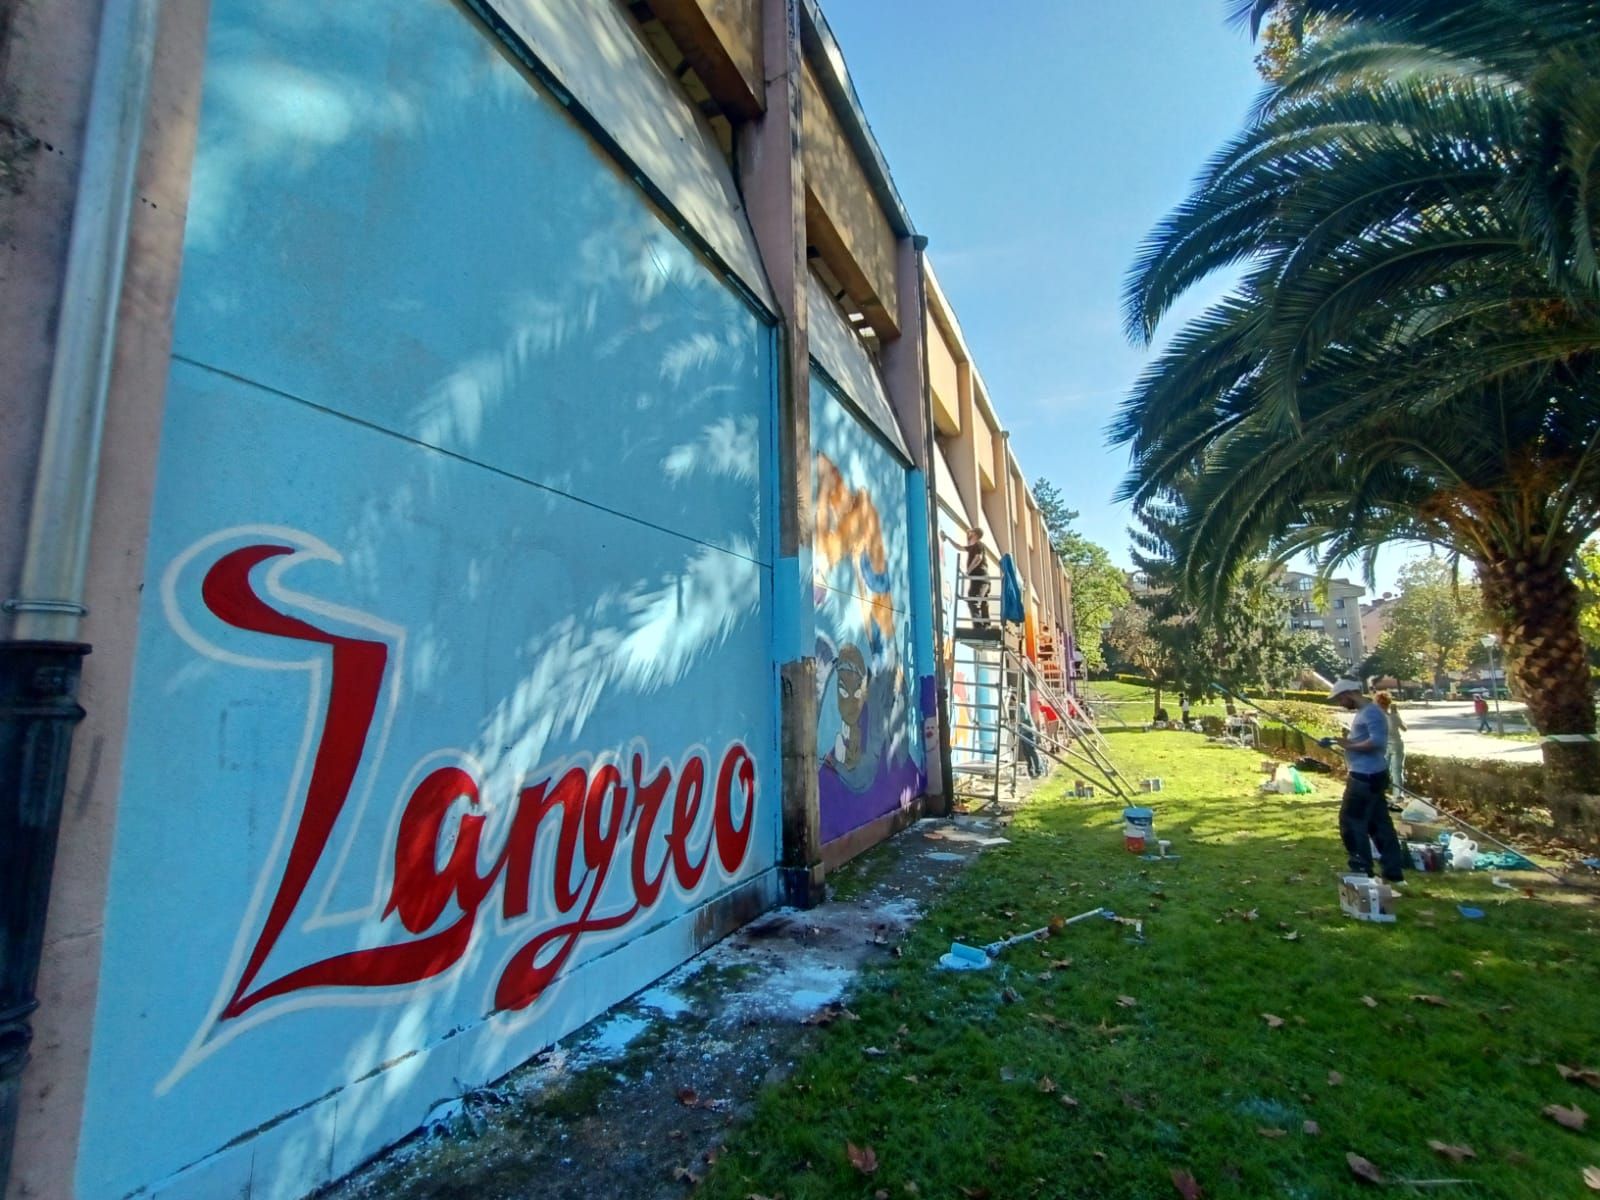 Diecinueve grafiteros se unen para lucir el polideportivo de La Felguera